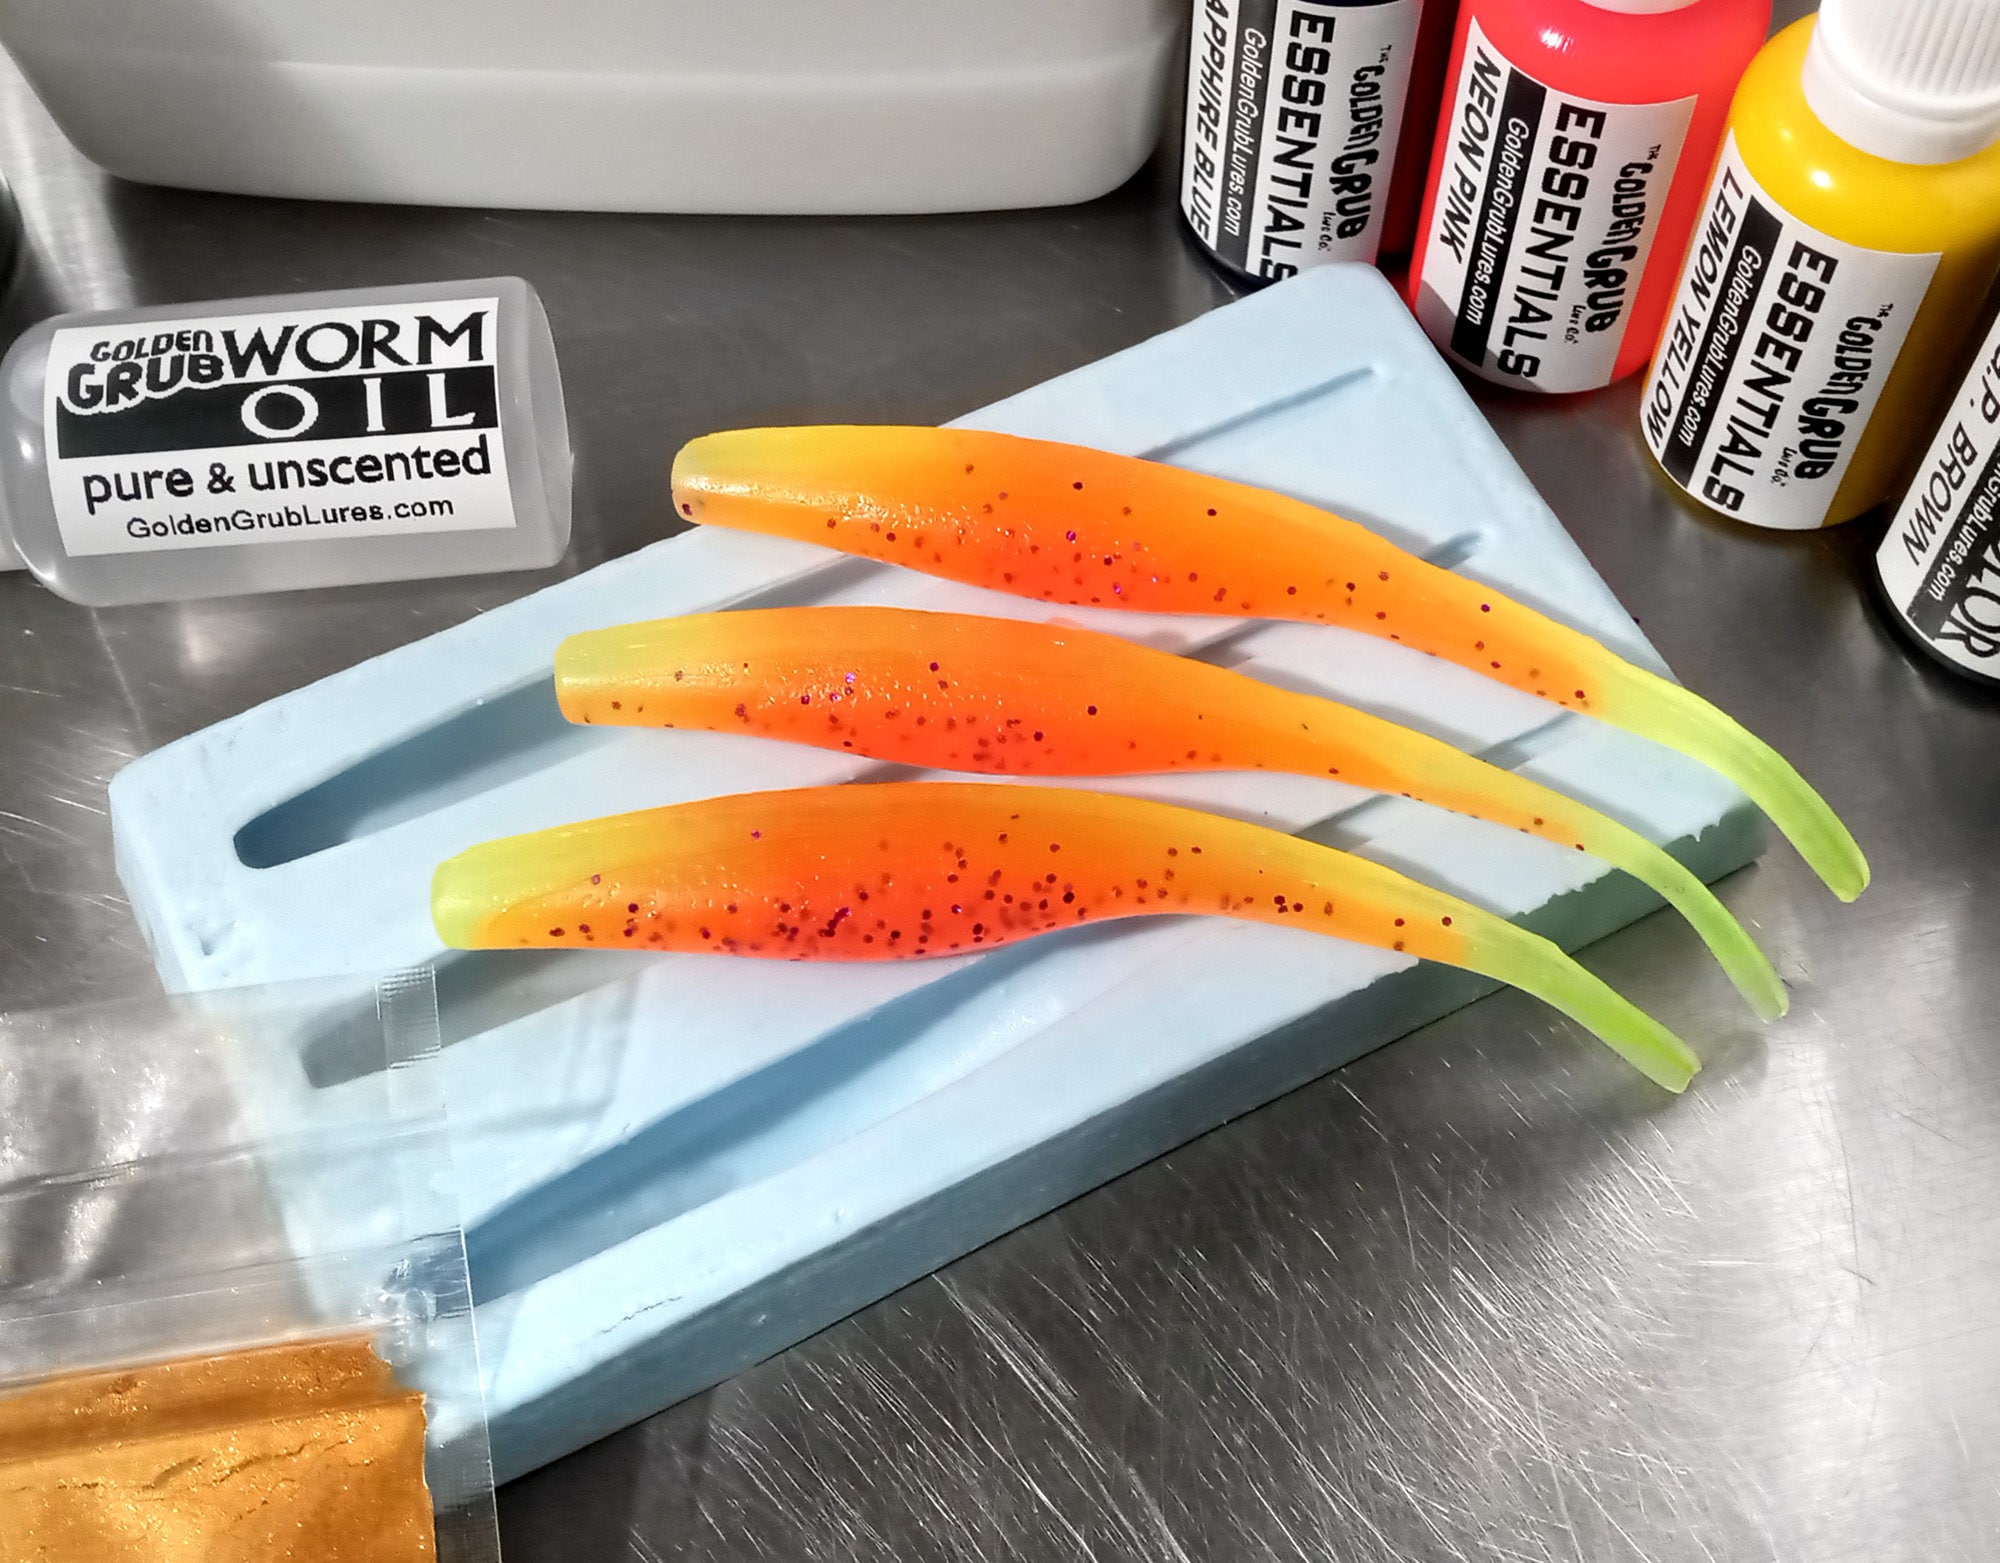 NEW Liquid Plastic SUPER STARTER Set Fluke 3 Cavity Mold Plastisol Fishing  Lure Bait Making Kit, Fun & Easy to Learn 